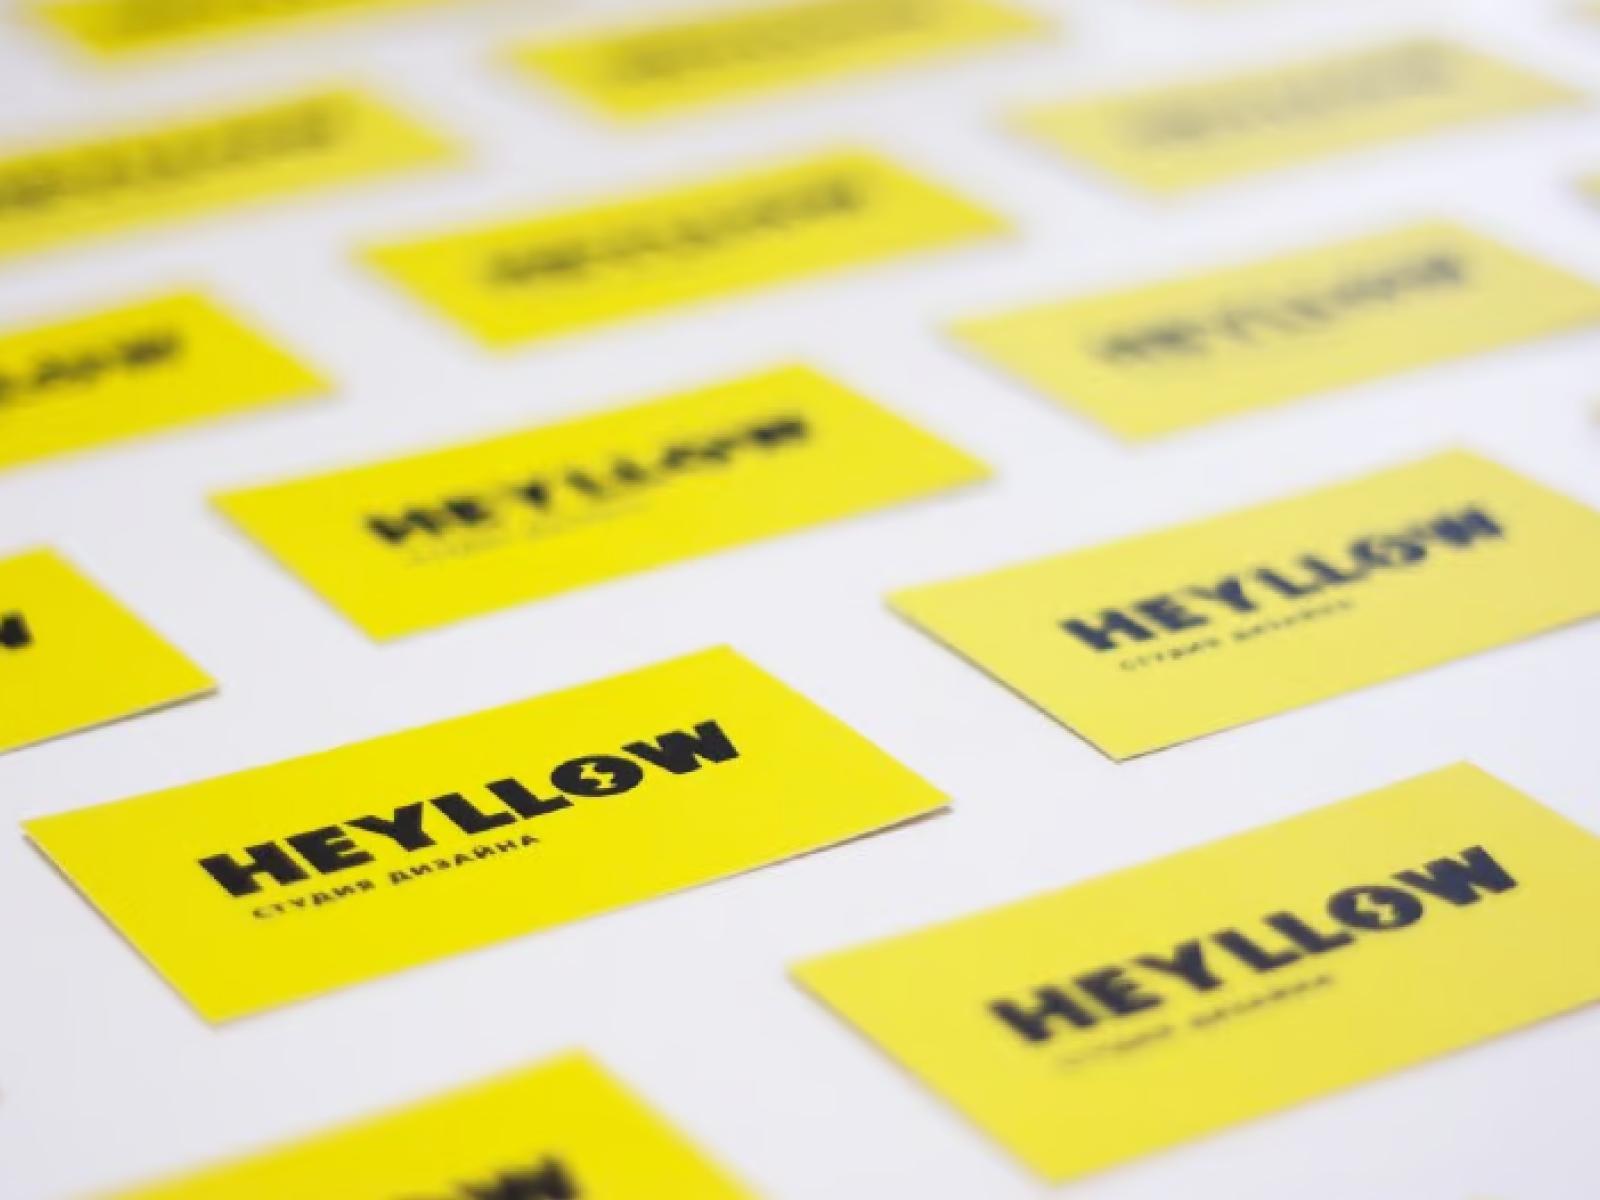 Heyllow Lab brand